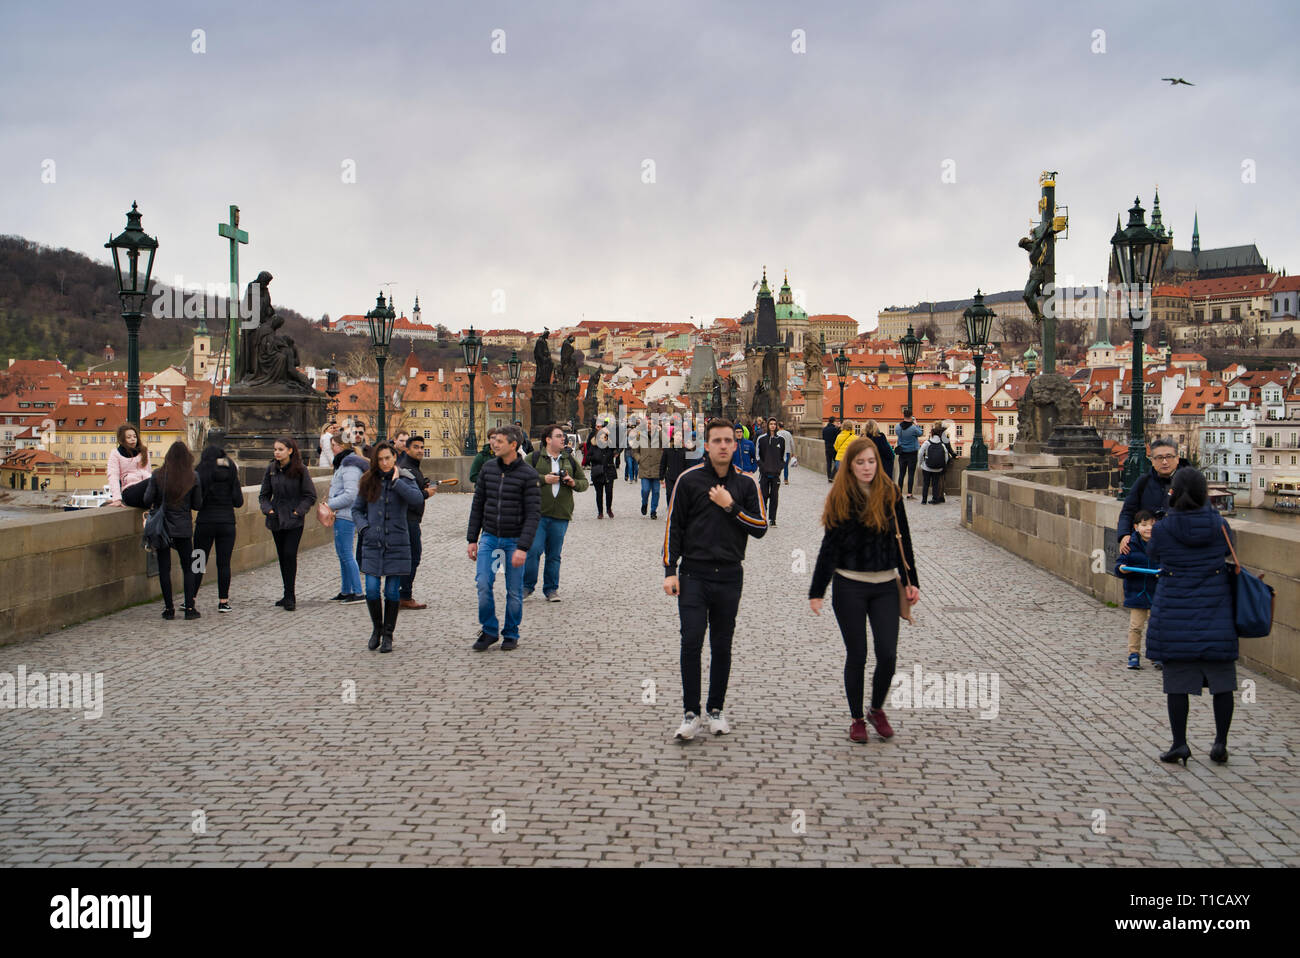 Praga, Repubblica Ceca - Marzo 04, 2019: Charles Bridge (Karluv Most), la vista della città vecchia e molti turisti a piedi Foto Stock